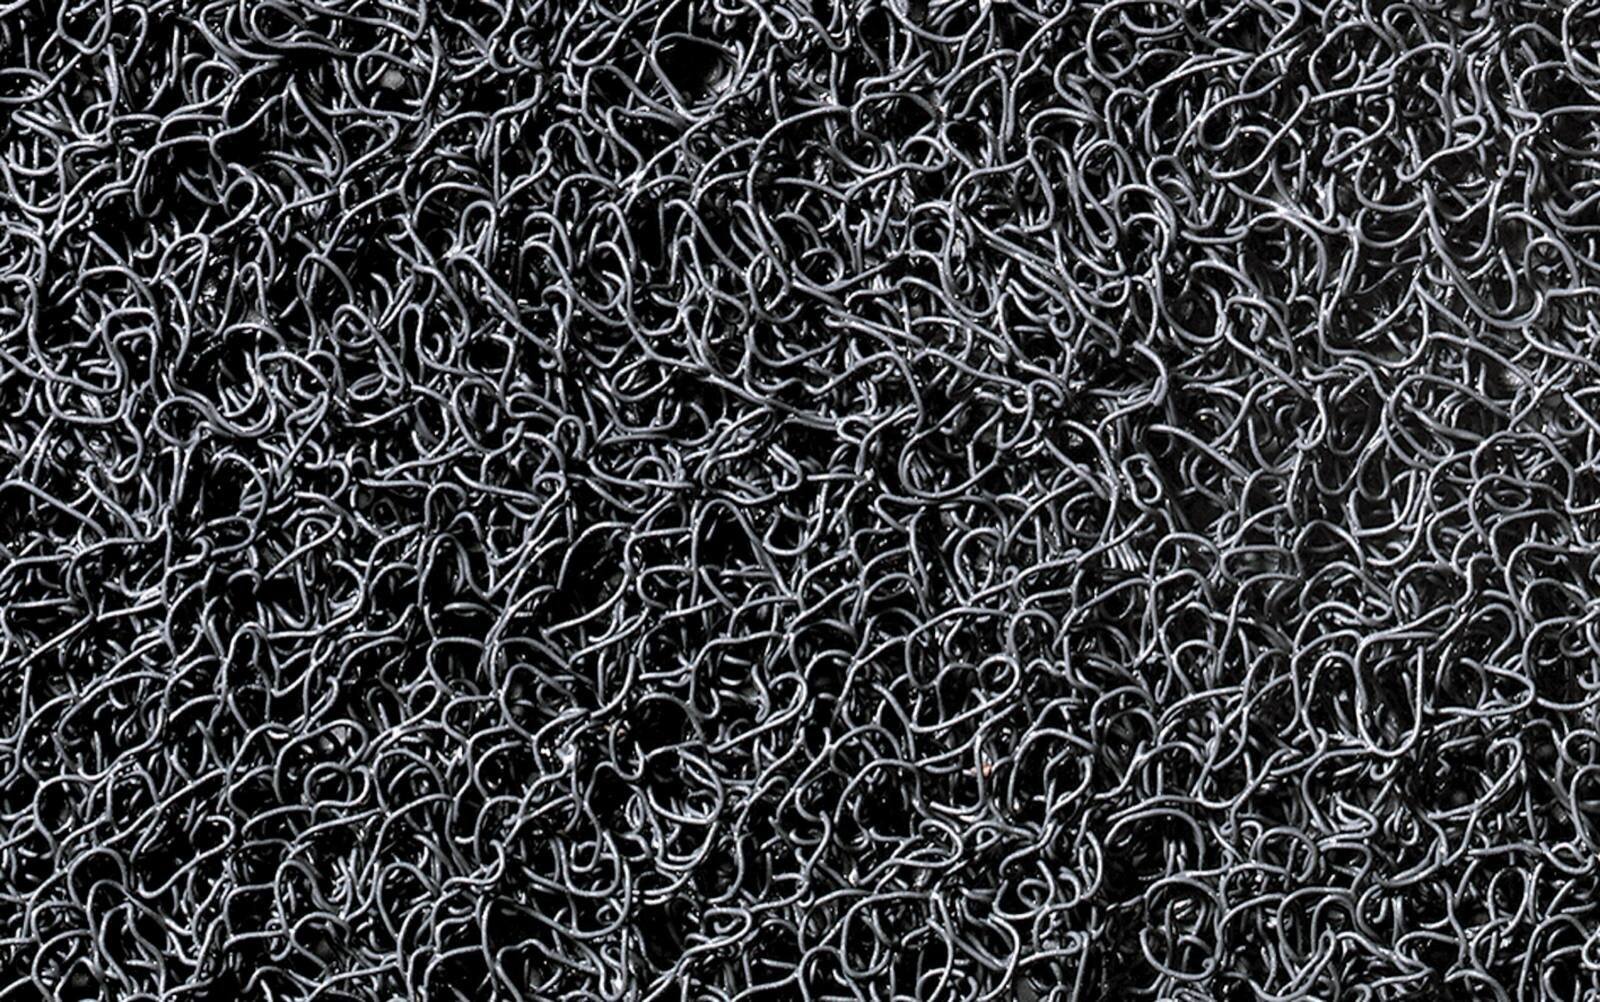 tappeto antipolvere 3M Nomad Terra 6850, grigio, 6m x 1,2m